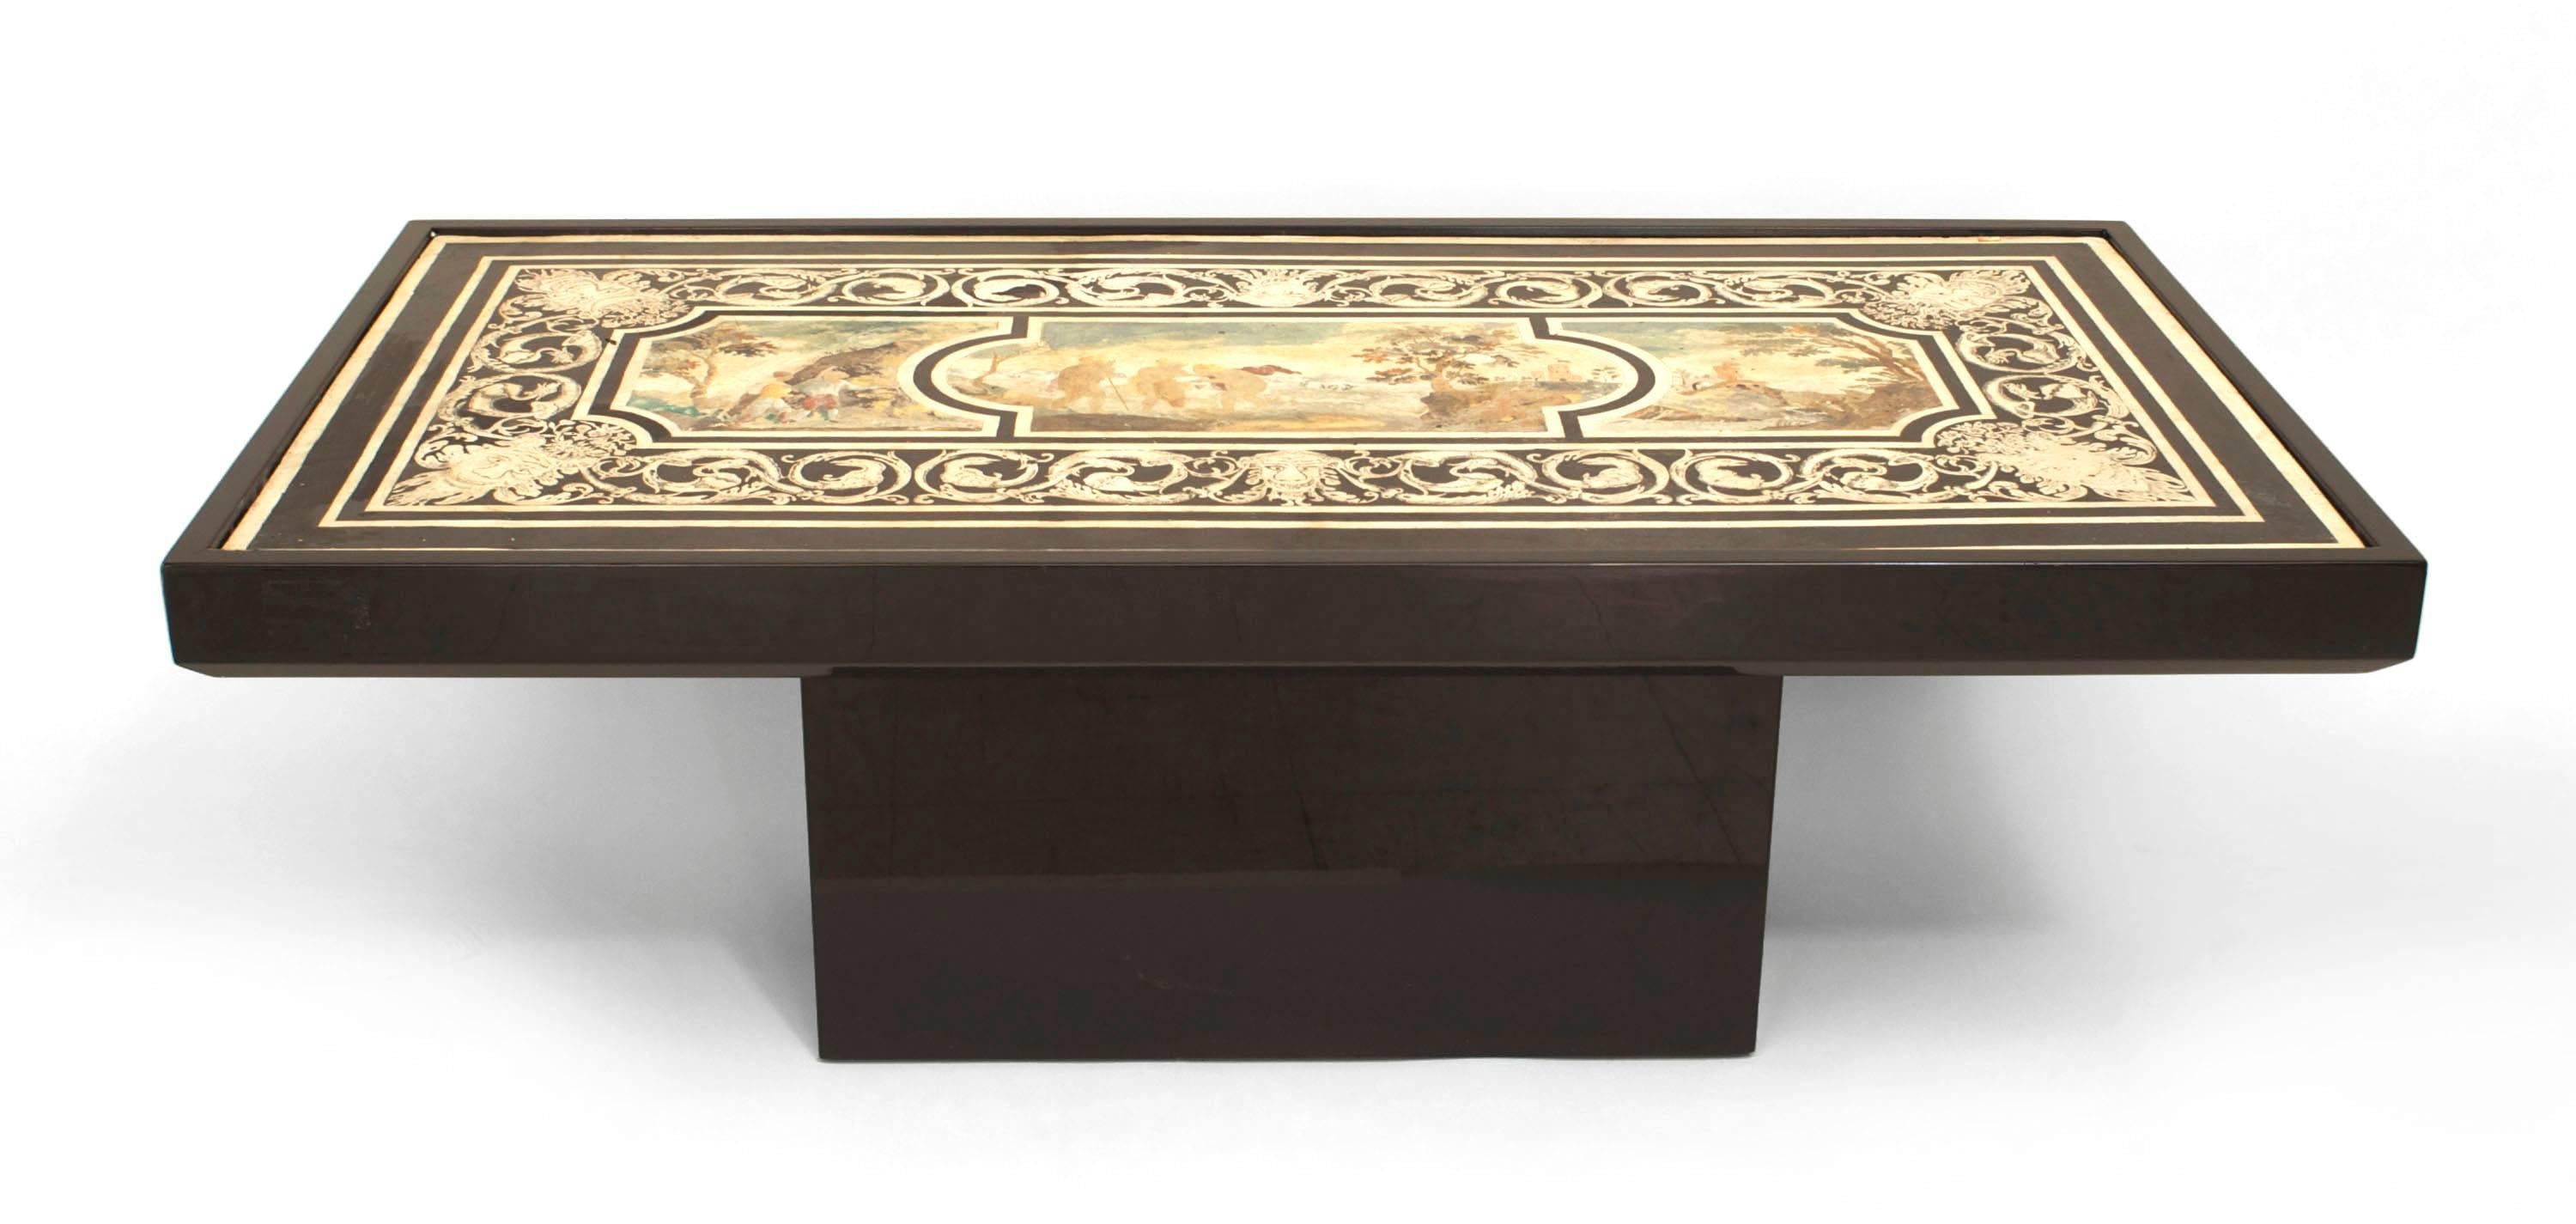 Table basse de style néoclassique italien de type scagliola avec une scène classique centrée avec une bordure noire et blanche sur une base contemporaine ébonisée.
